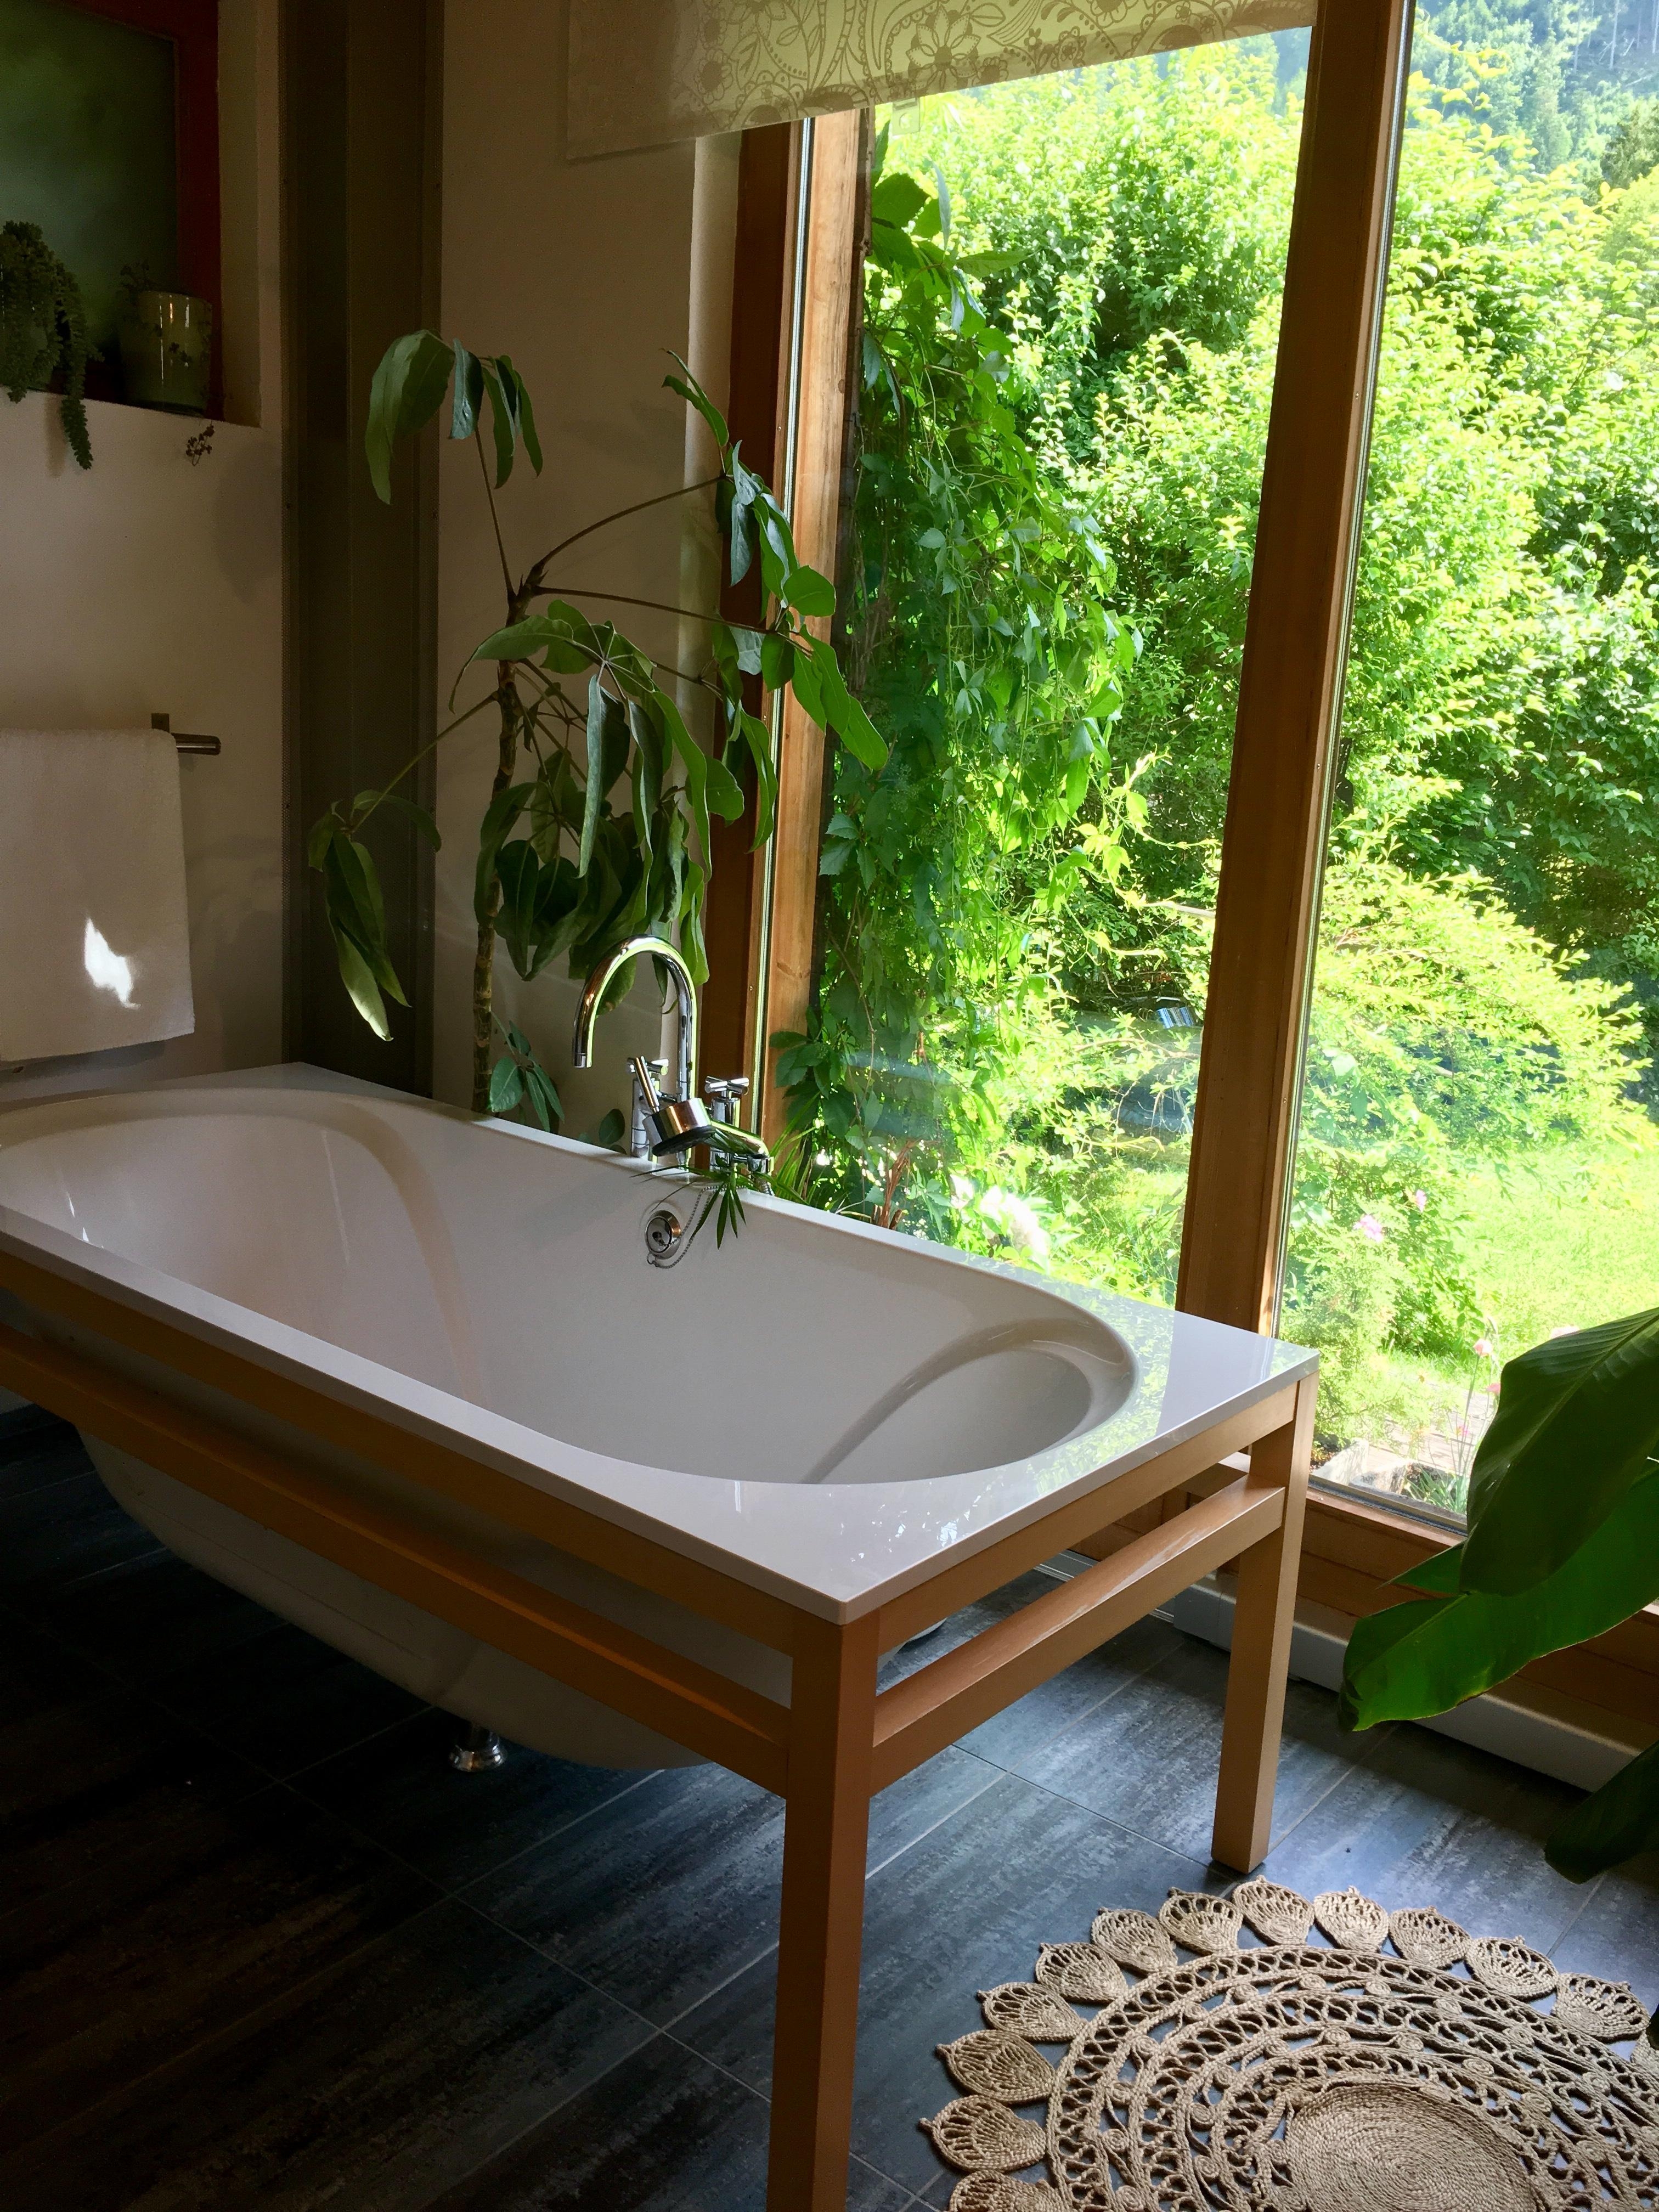 entspannten start in die neue woche  in meinem natur 🌱 #badezimmer #greenliving #badewanne #urbanjungle